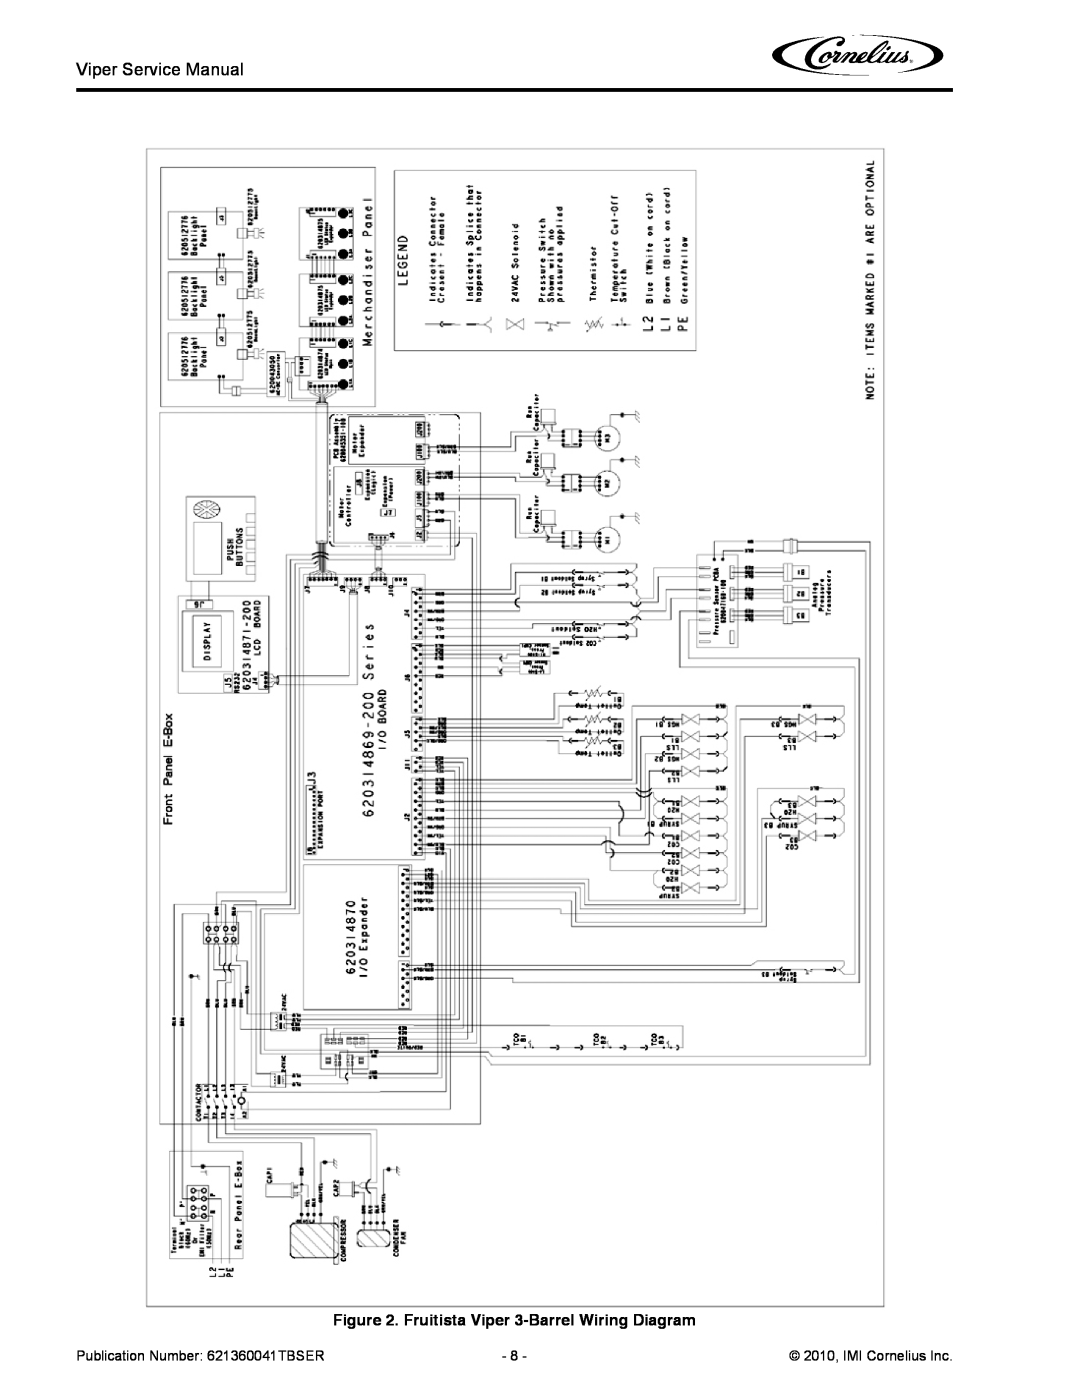 Cornelius Fruitista Viper 3-BarrelWiring Diagram, Publication Number 621360041TBSER, 2010, IMI Cornelius Inc 